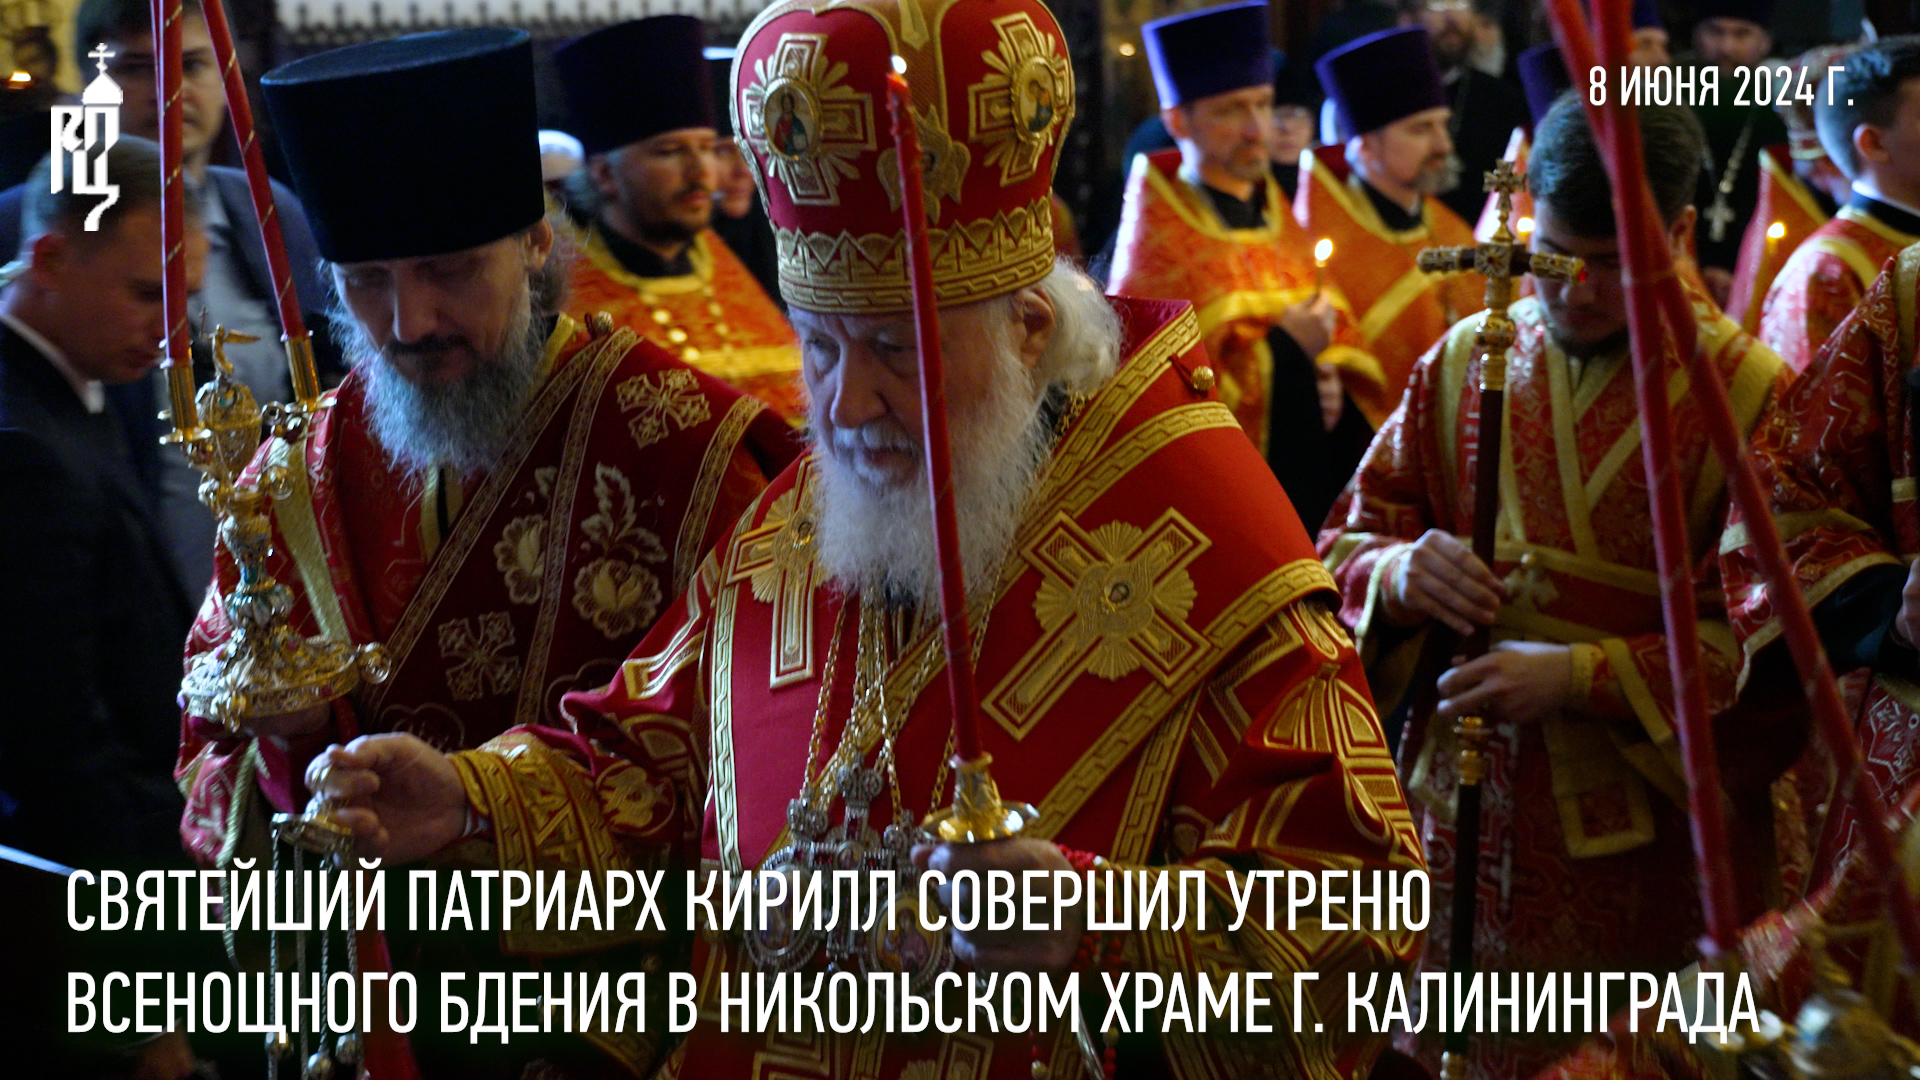 Святейший Патриарх Кирилл совершил утреню всенощного бдения в Никольском храме г. Калининграда